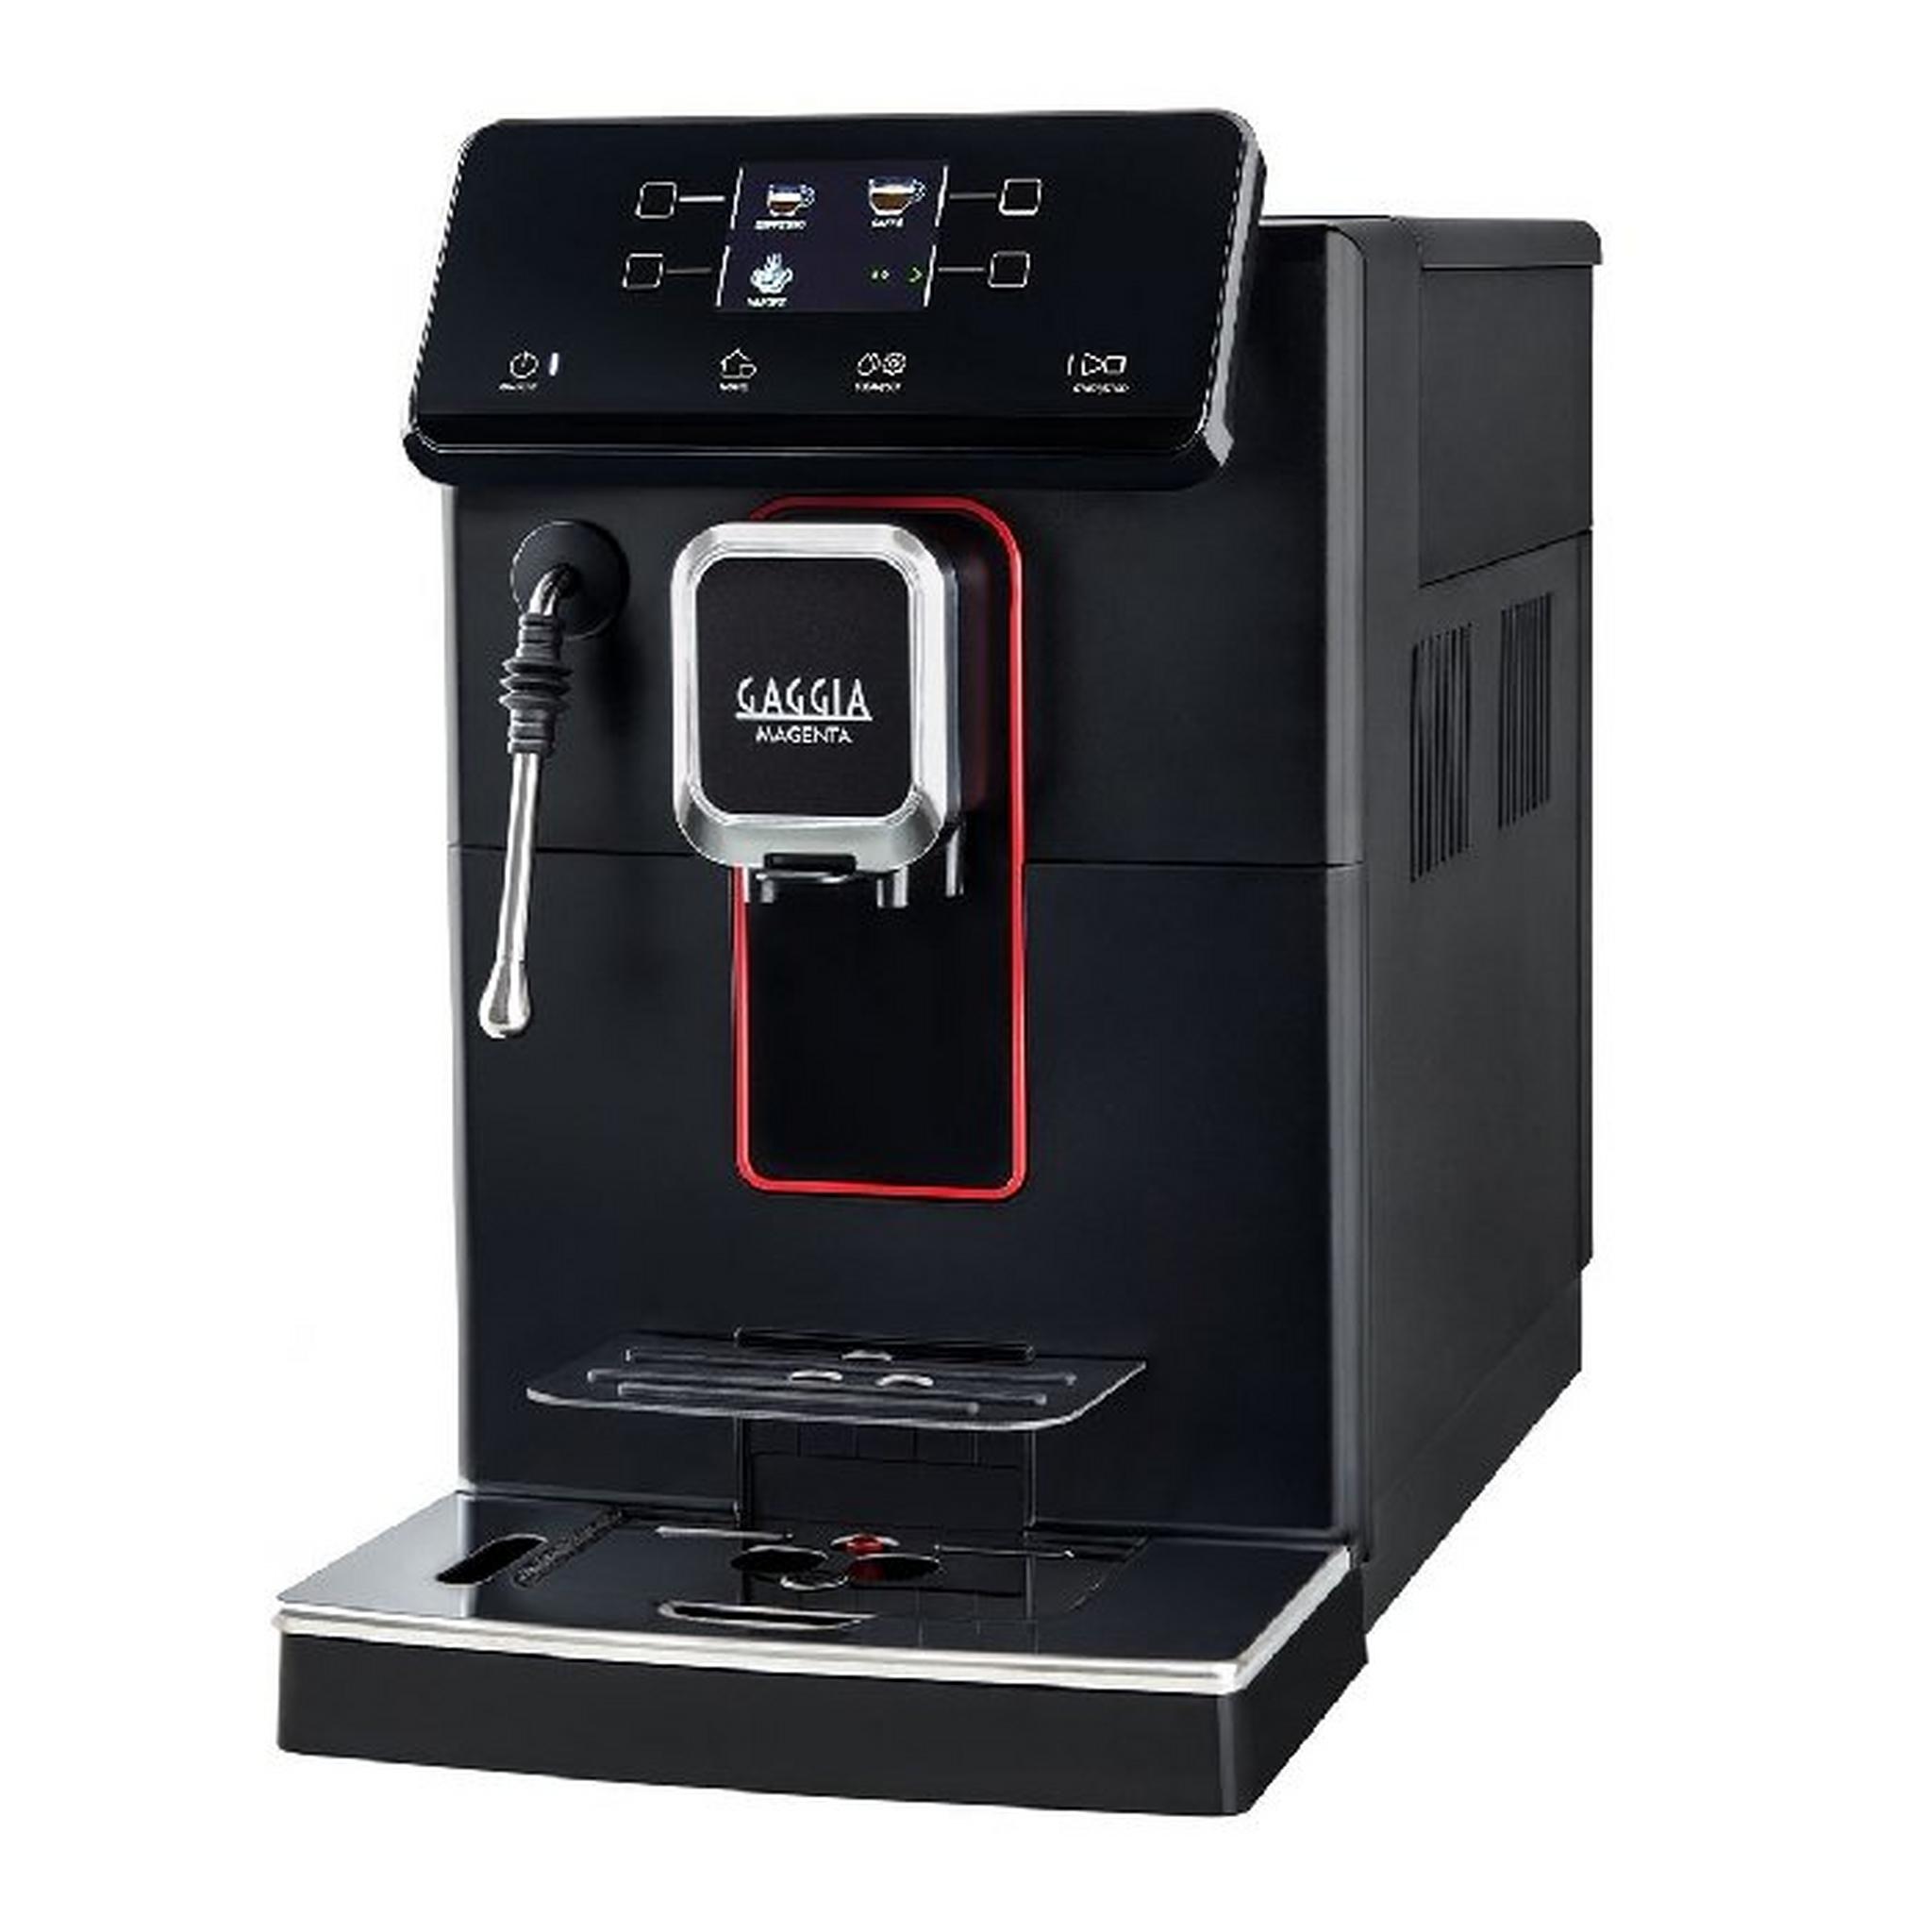 ماكينة صنع القهوة الأوتوماتيكية جاجيا ماجنتا بلس 1.8 لتر 1900 وات RI8700-01